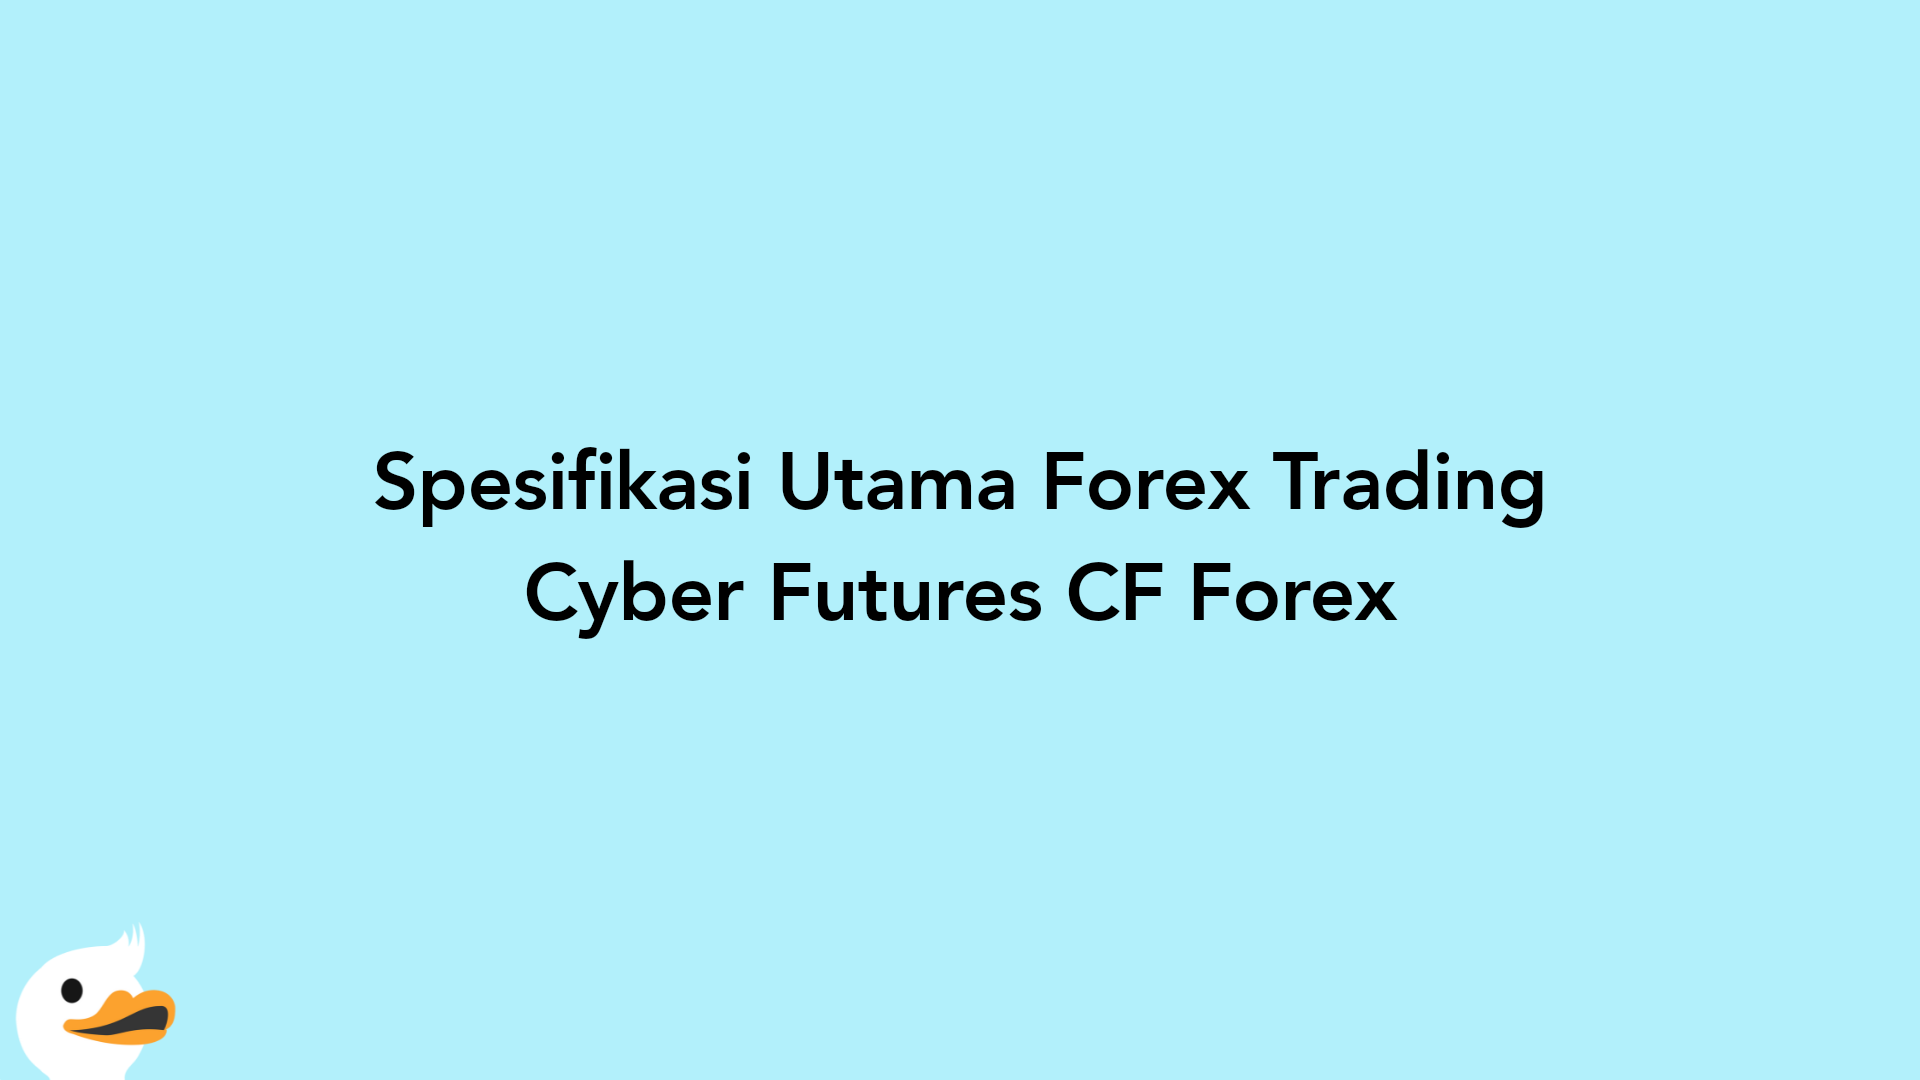 Spesifikasi Utama Forex Trading Cyber Futures CF Forex